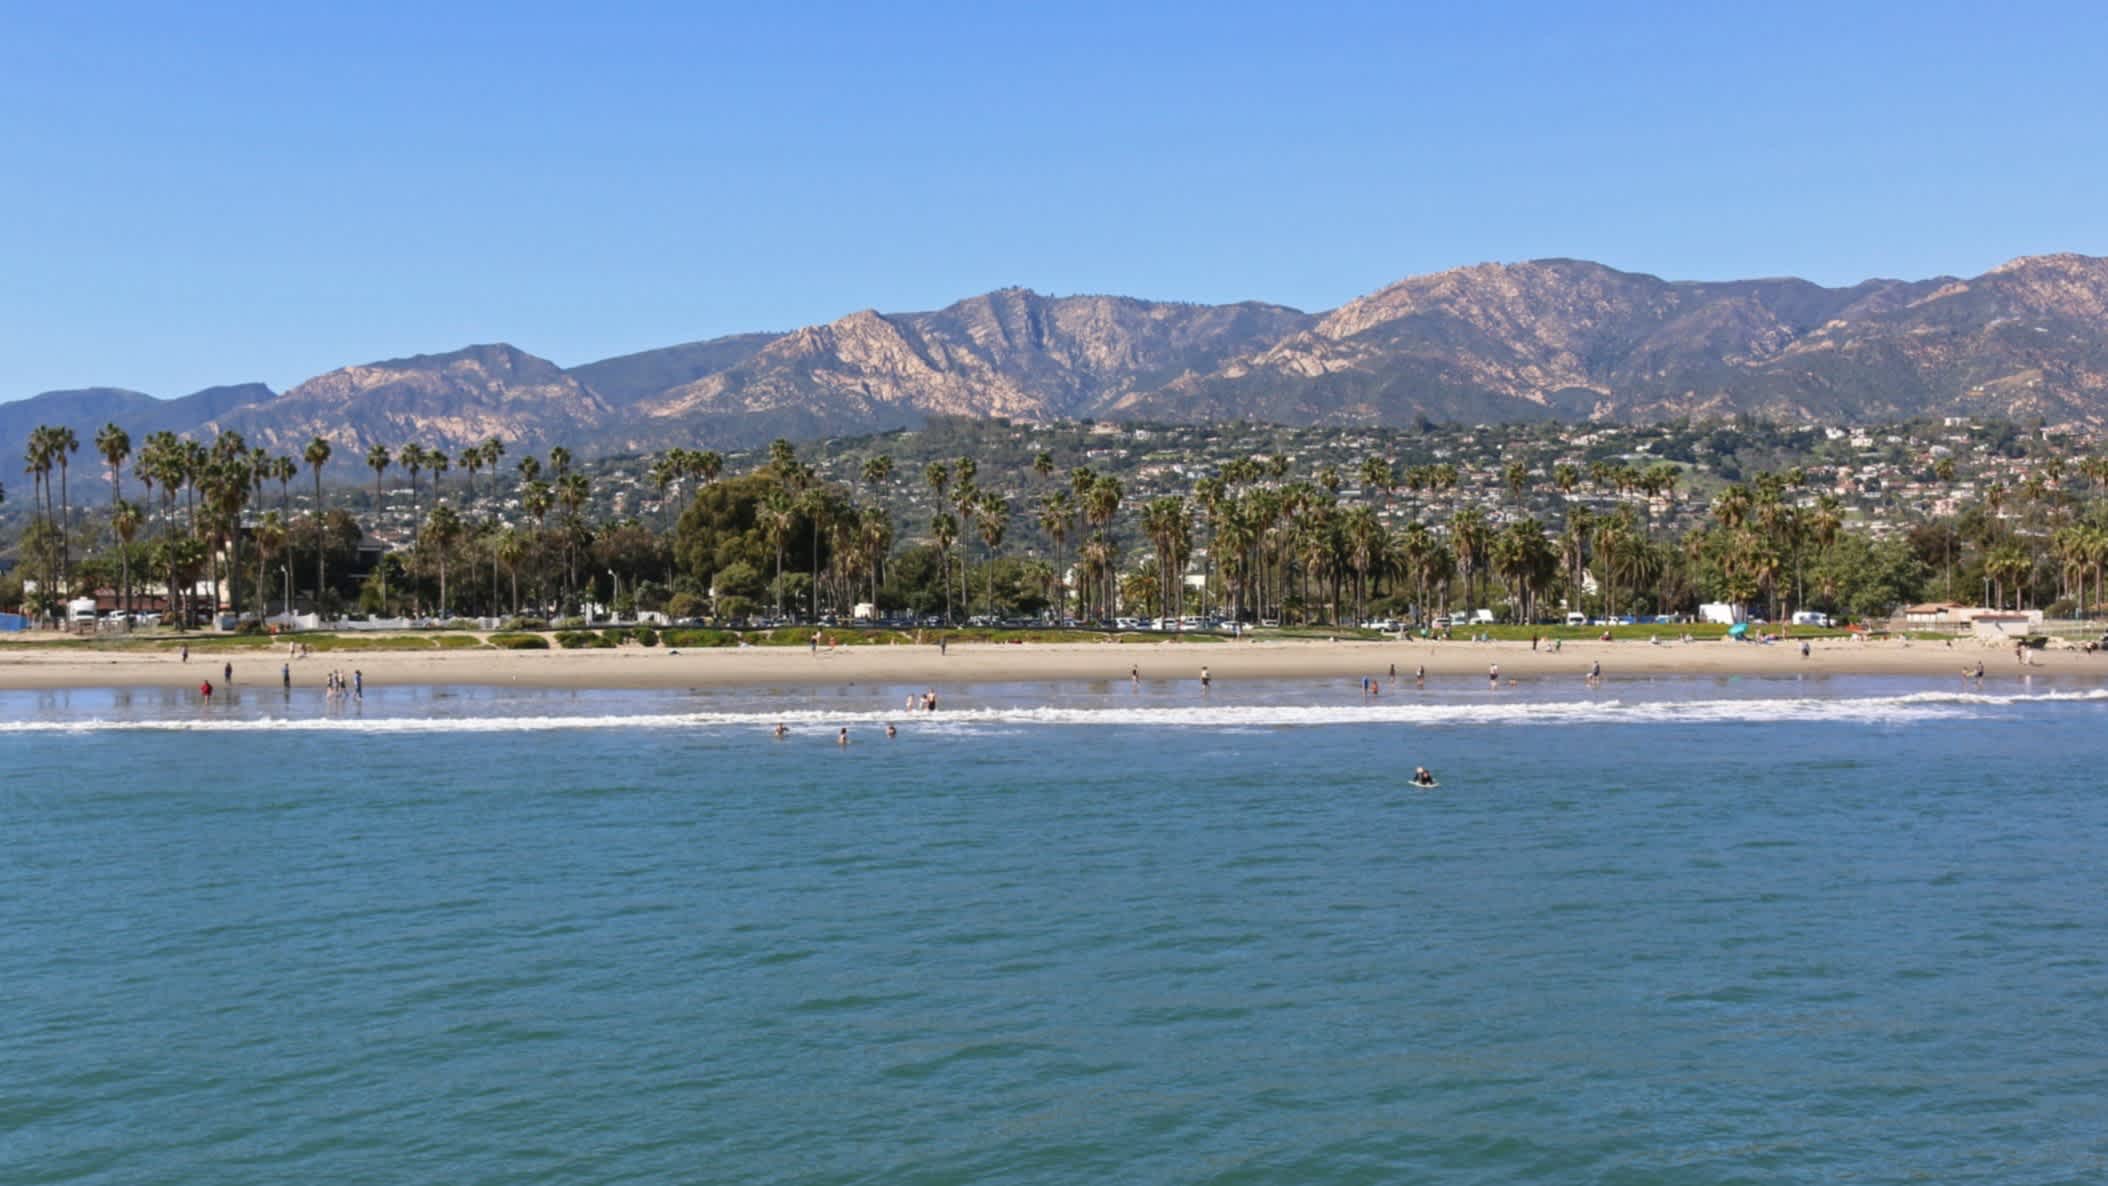 Weitblick auf den Strand East Beach, Santa Barbara, Kalifornien, USA bei Sonnenschein und mit der Stadt sowie Bergen im Hintergrund.